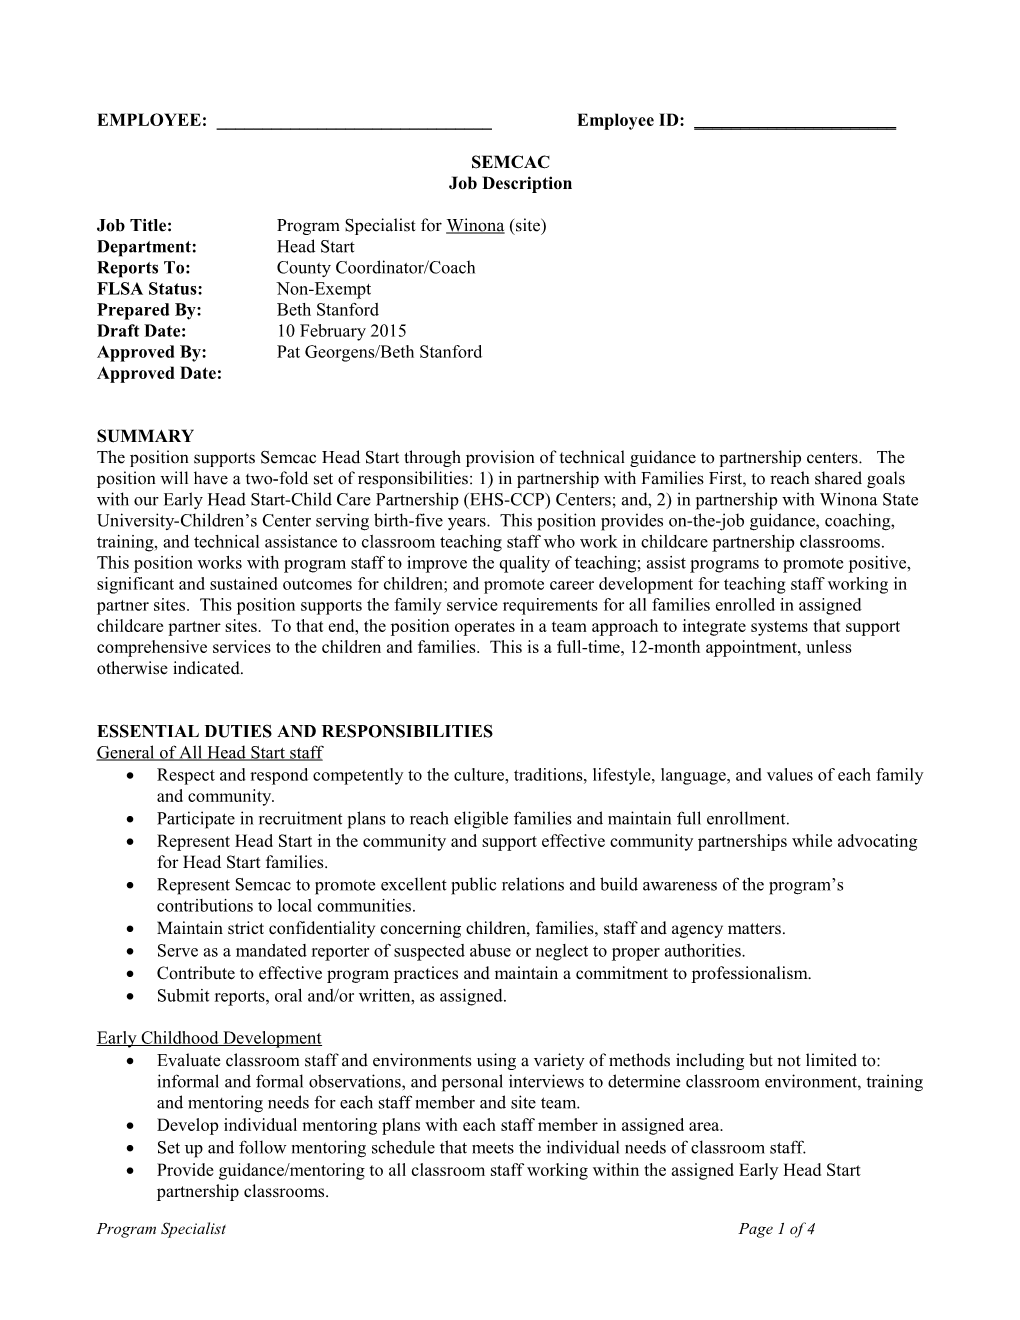 Job Title:Program Specialist for Winona (Site)